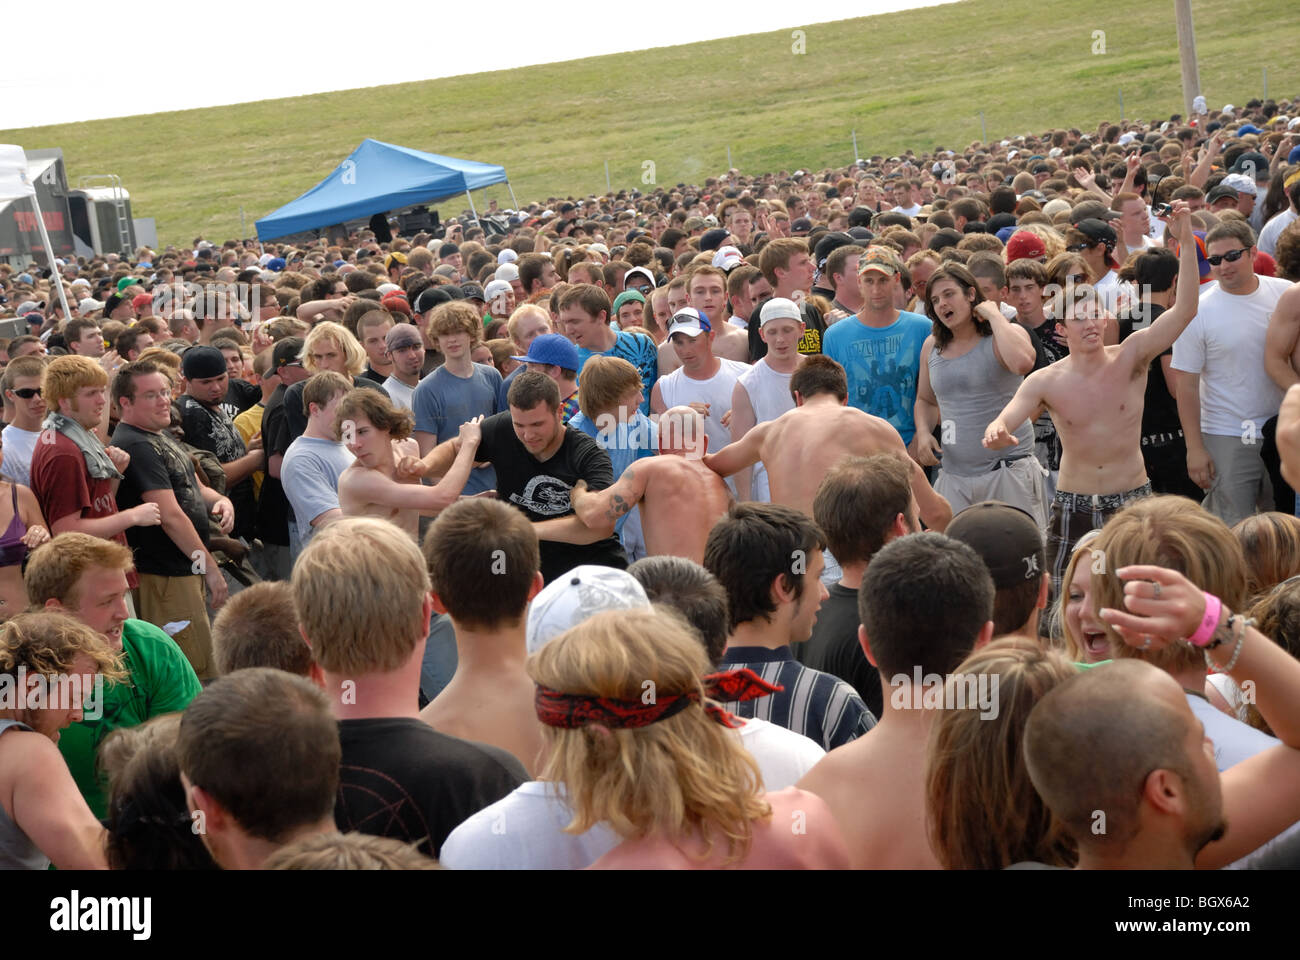 Eine große Menschenmenge bei einem Rockkonzert statt an einem freien Ort, mit Kreis-Grube oder Moshpit in Mitte der Masse. Stockfoto